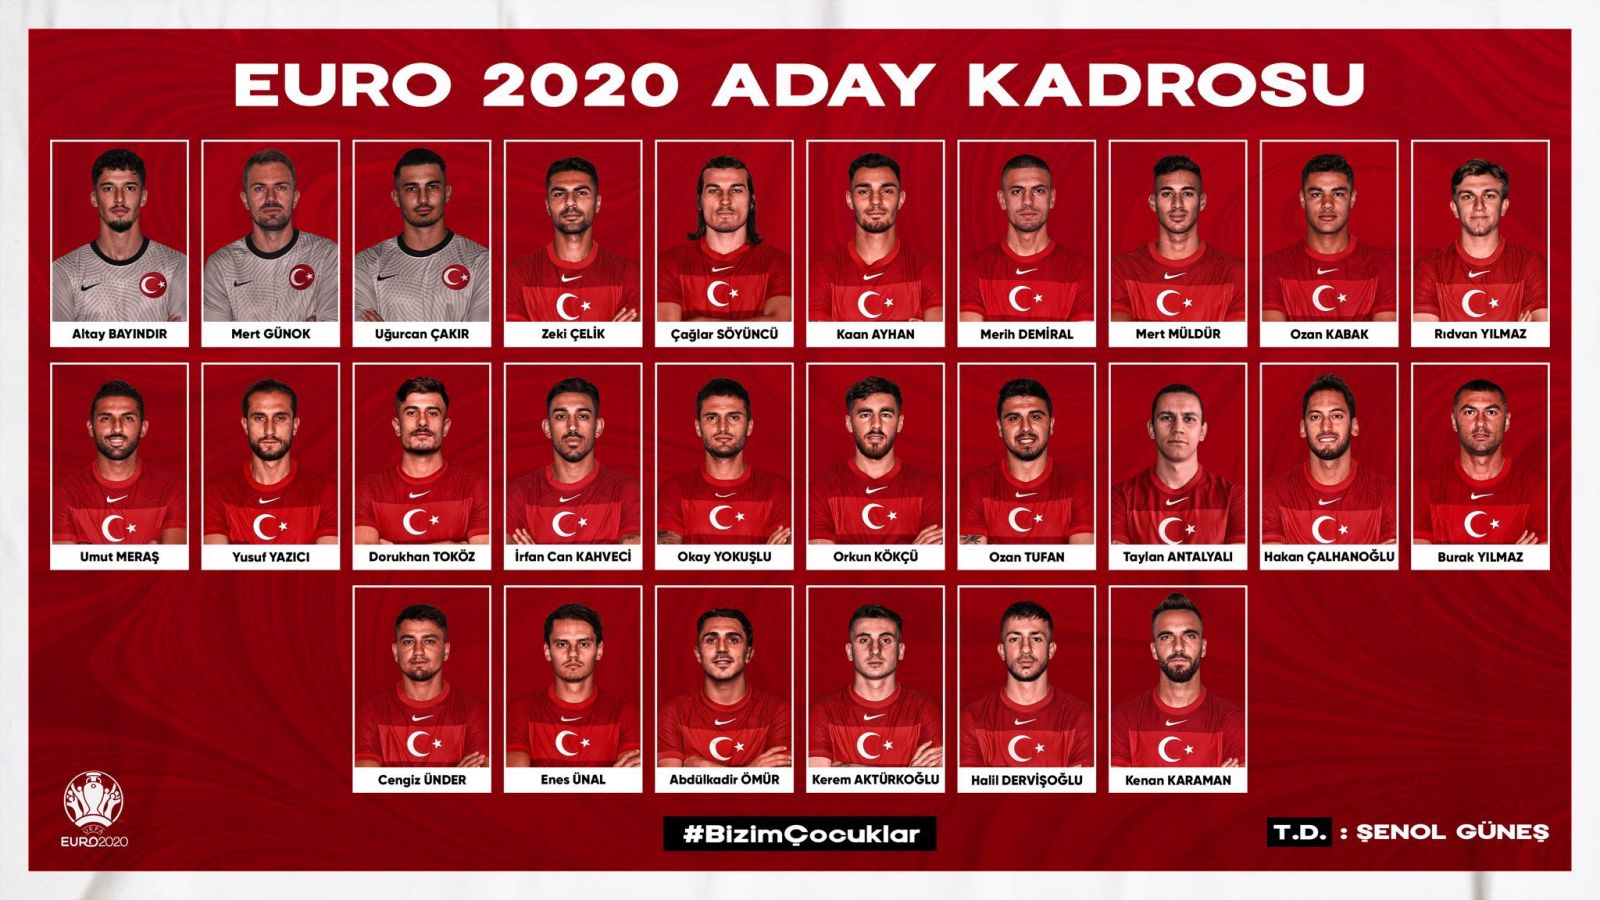 Toàn bộ cầu thủ chính thức và dự bị Thổ Nhĩ Kỳ Euro 2020